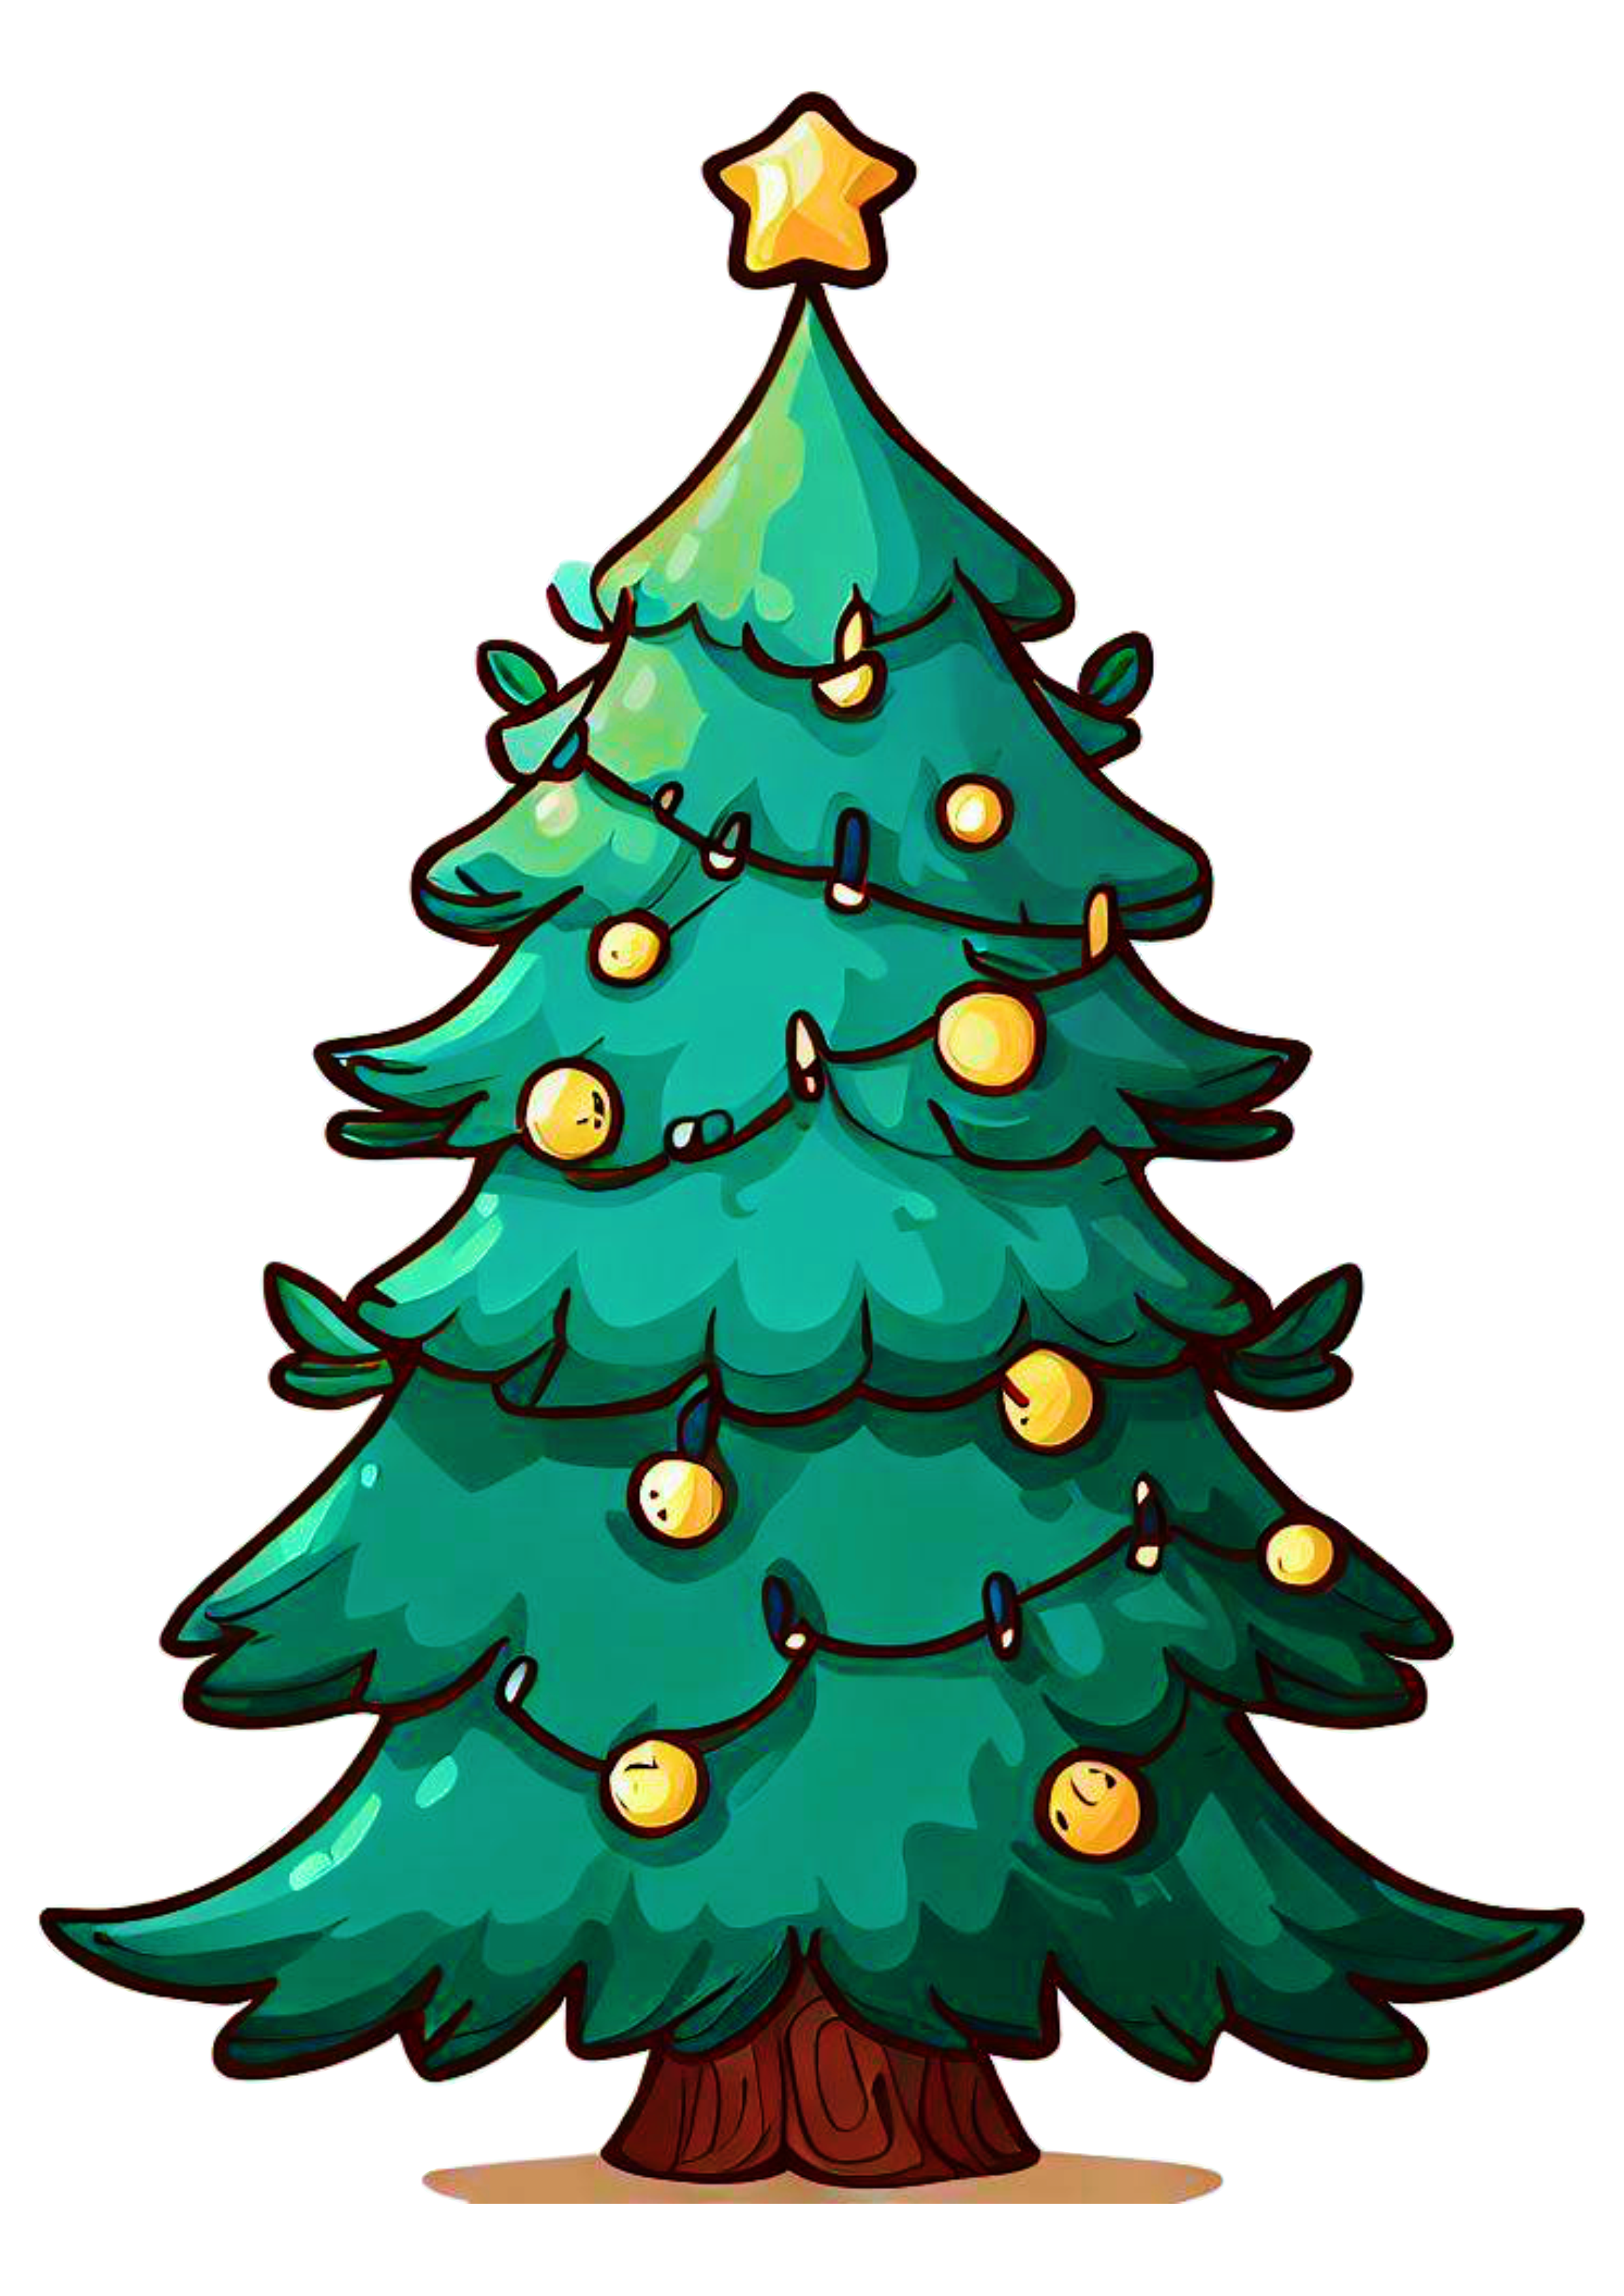 Árvore de natal desenho simples decoração natalina merry christmas ilustração artes gráficas vetor grátis png